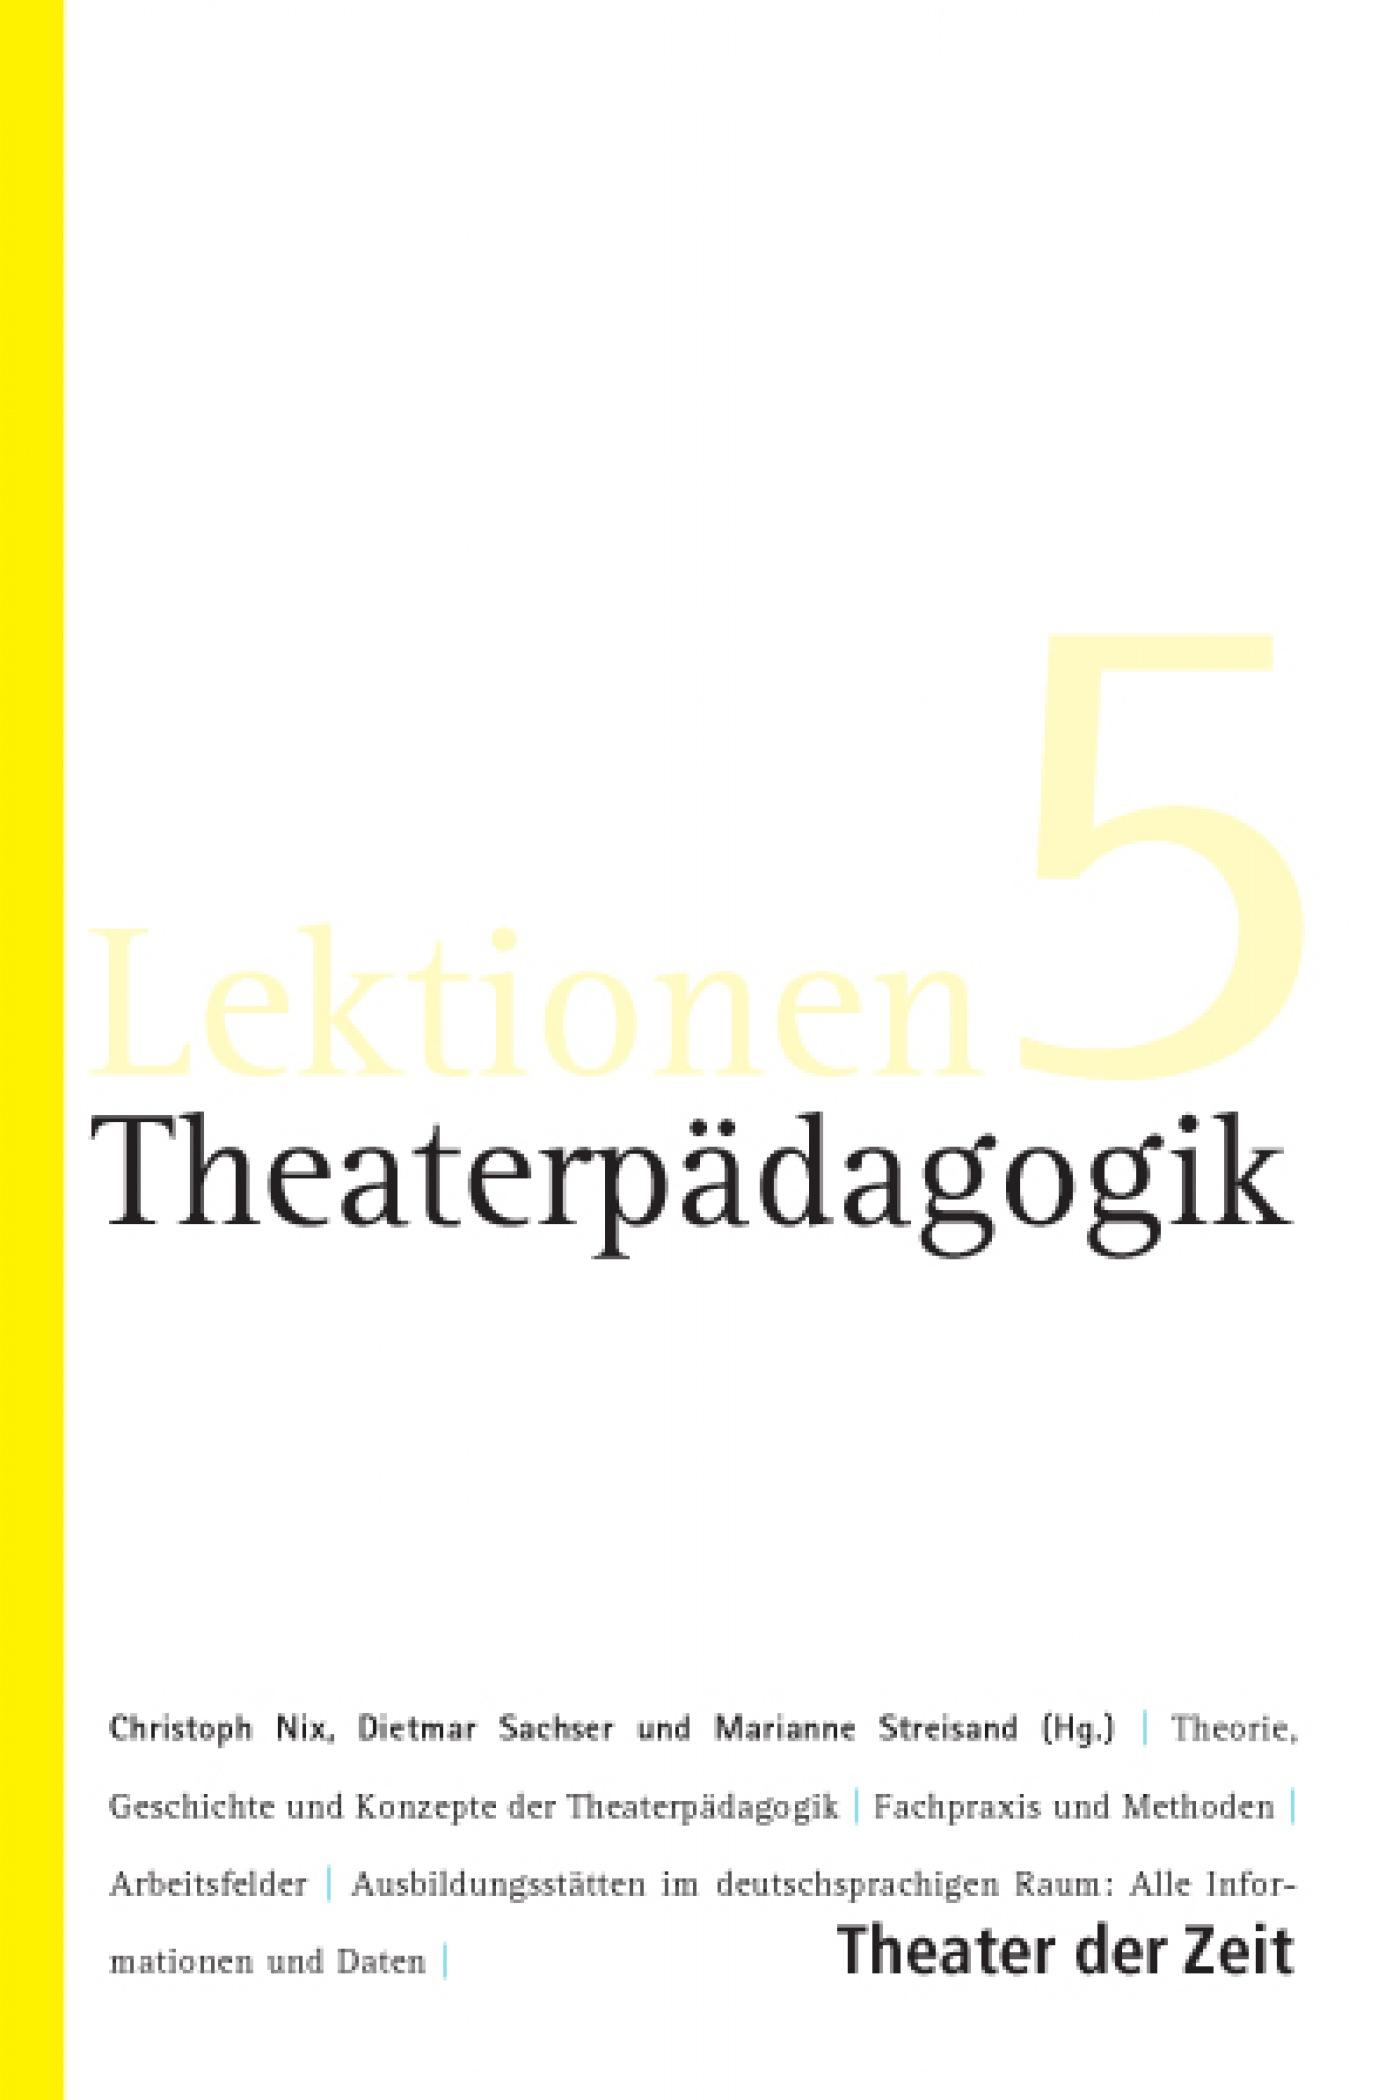 Lektionen 5 "Theaterpädagogik"